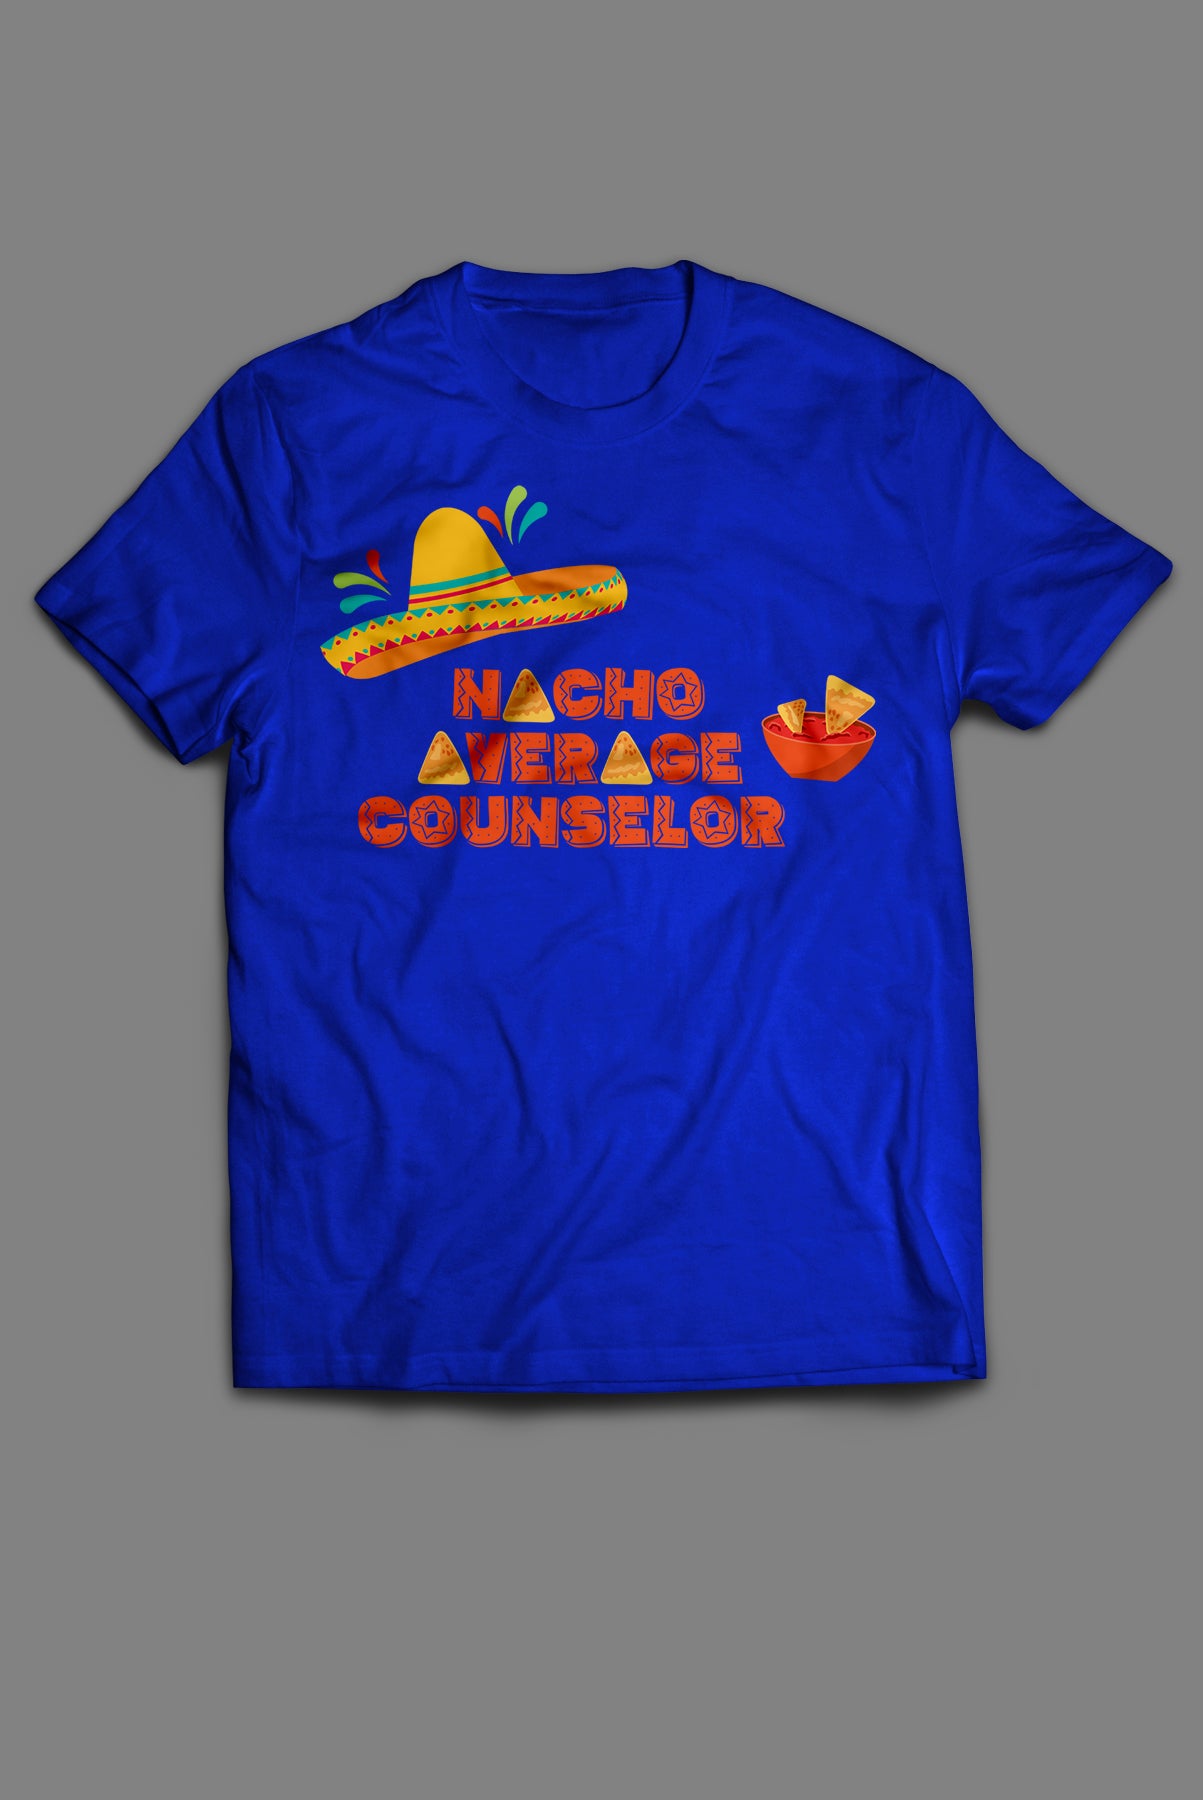 Nacho Average Counselor - Royal Blue Short Sleeve